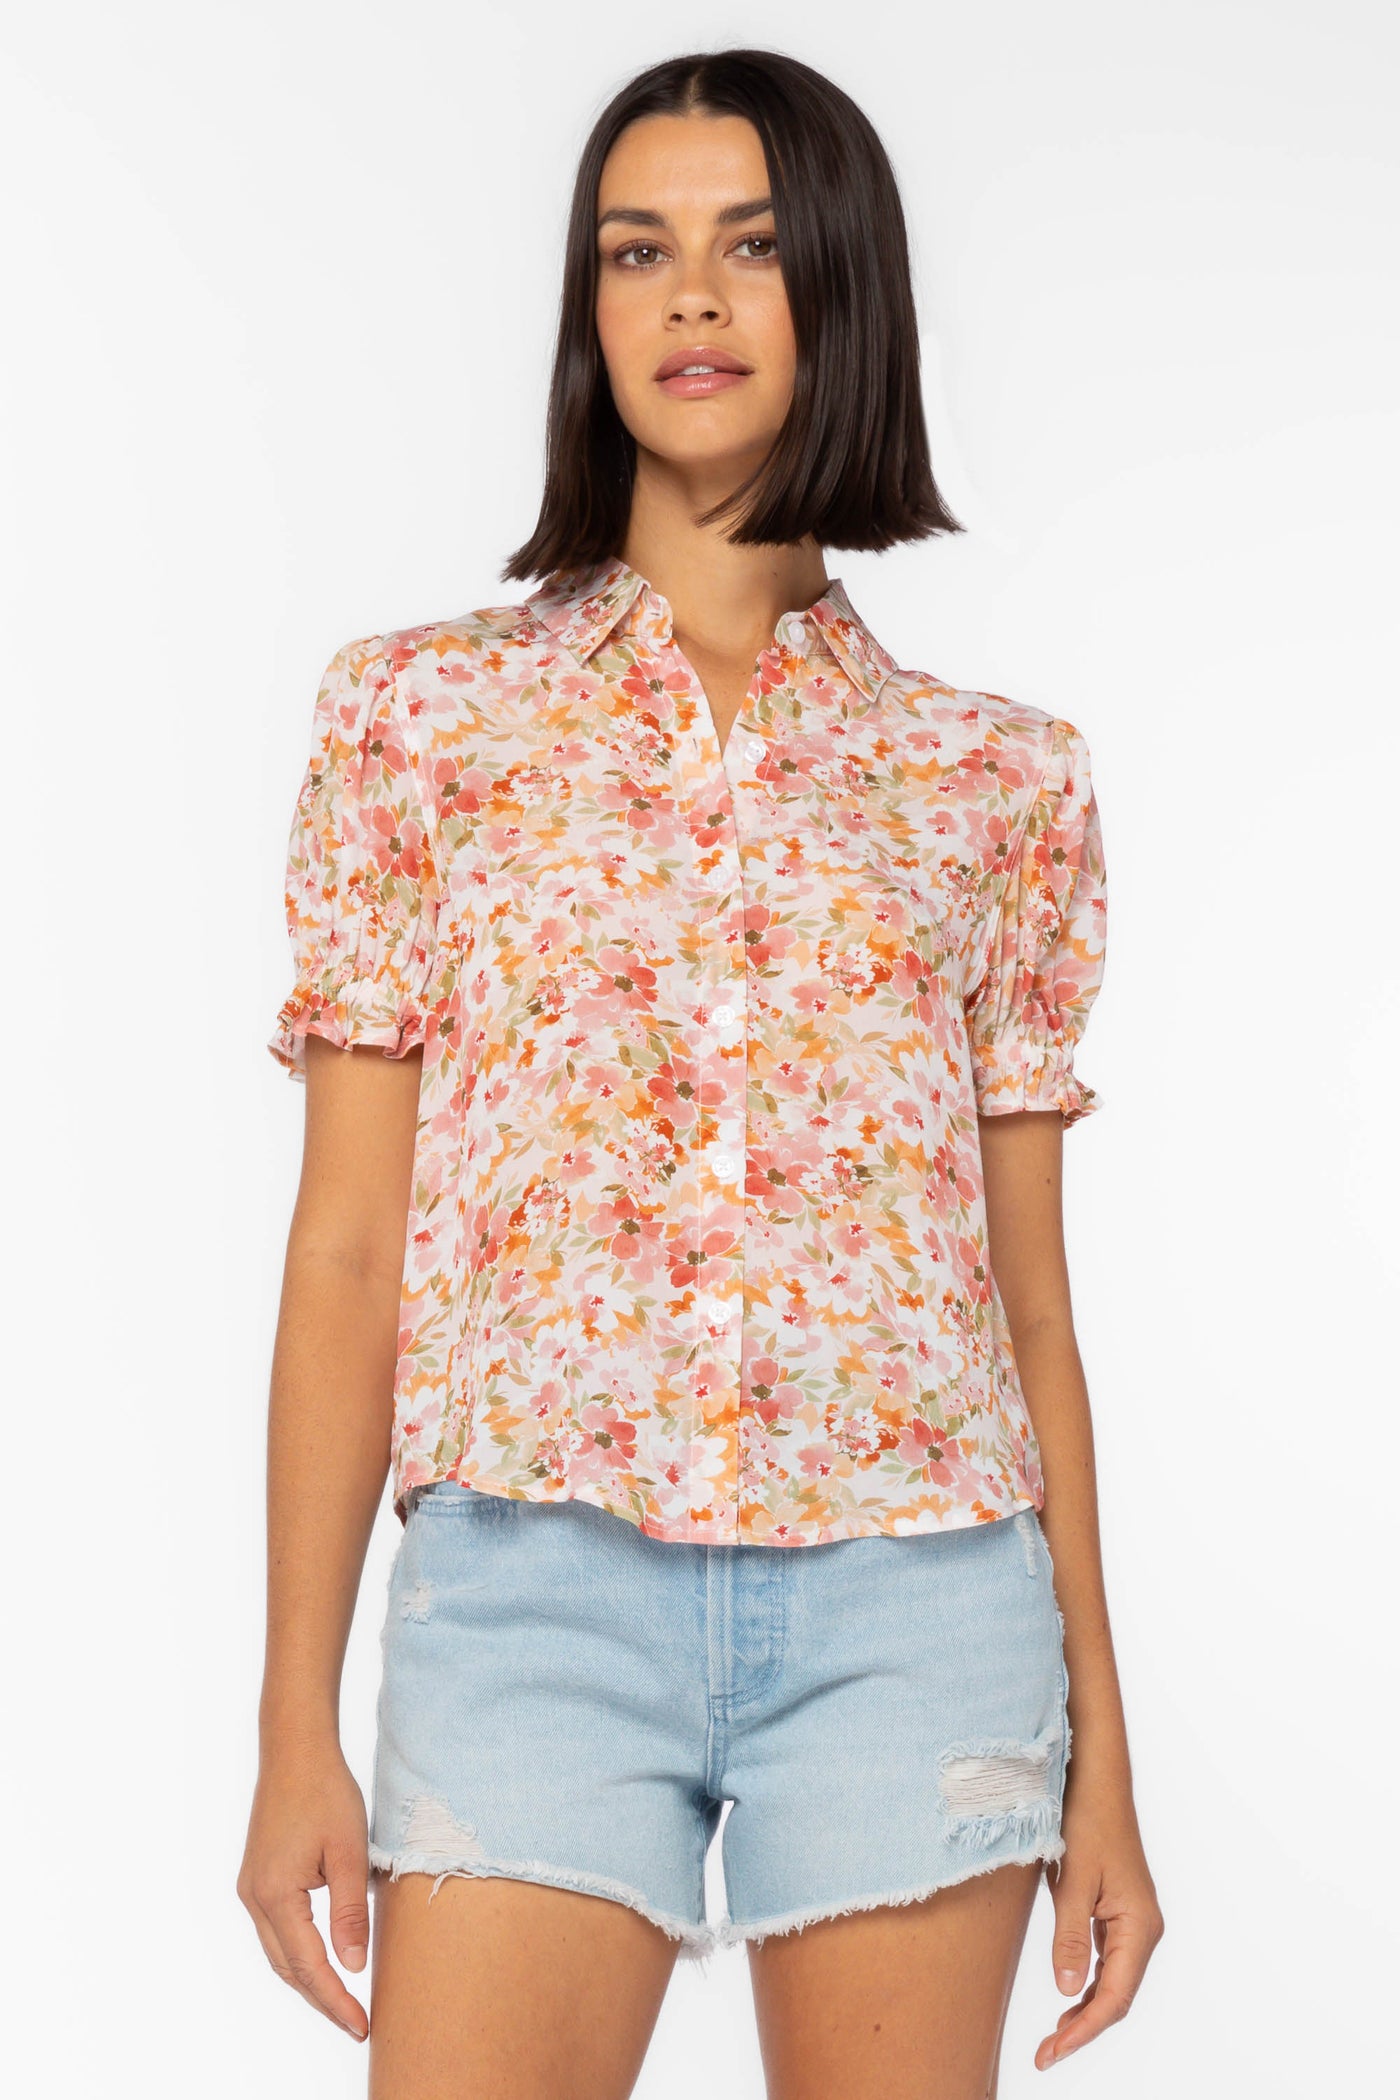 Kitt Orange Floral Shirt - Tops - Velvet Heart Clothing